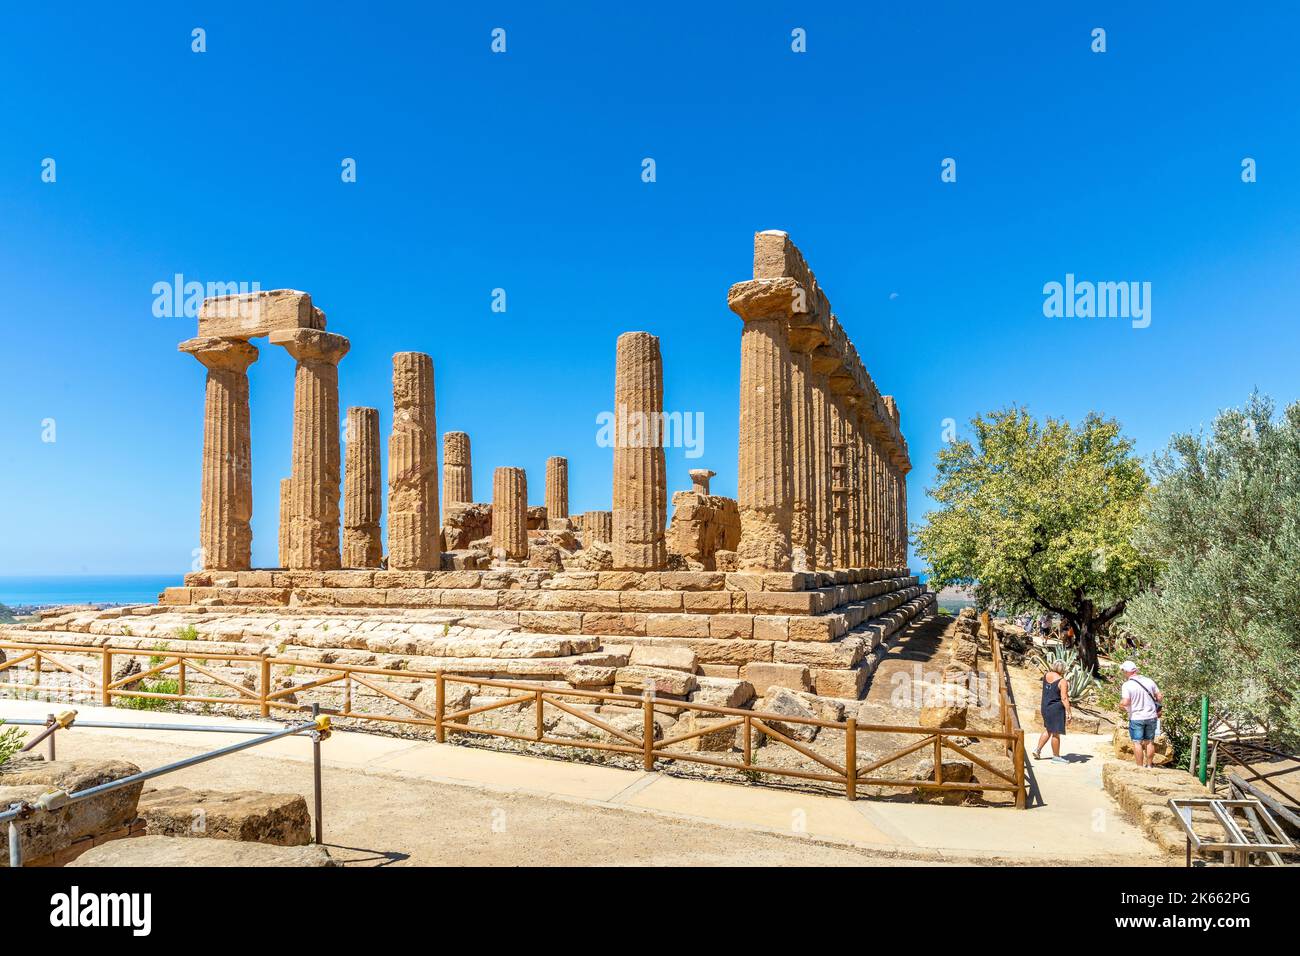 Agrigento, Sicile, Italie - 12 juillet 2020 : le temple de Juno, dans la vallée des temples d'Agrigento en Sicile Banque D'Images